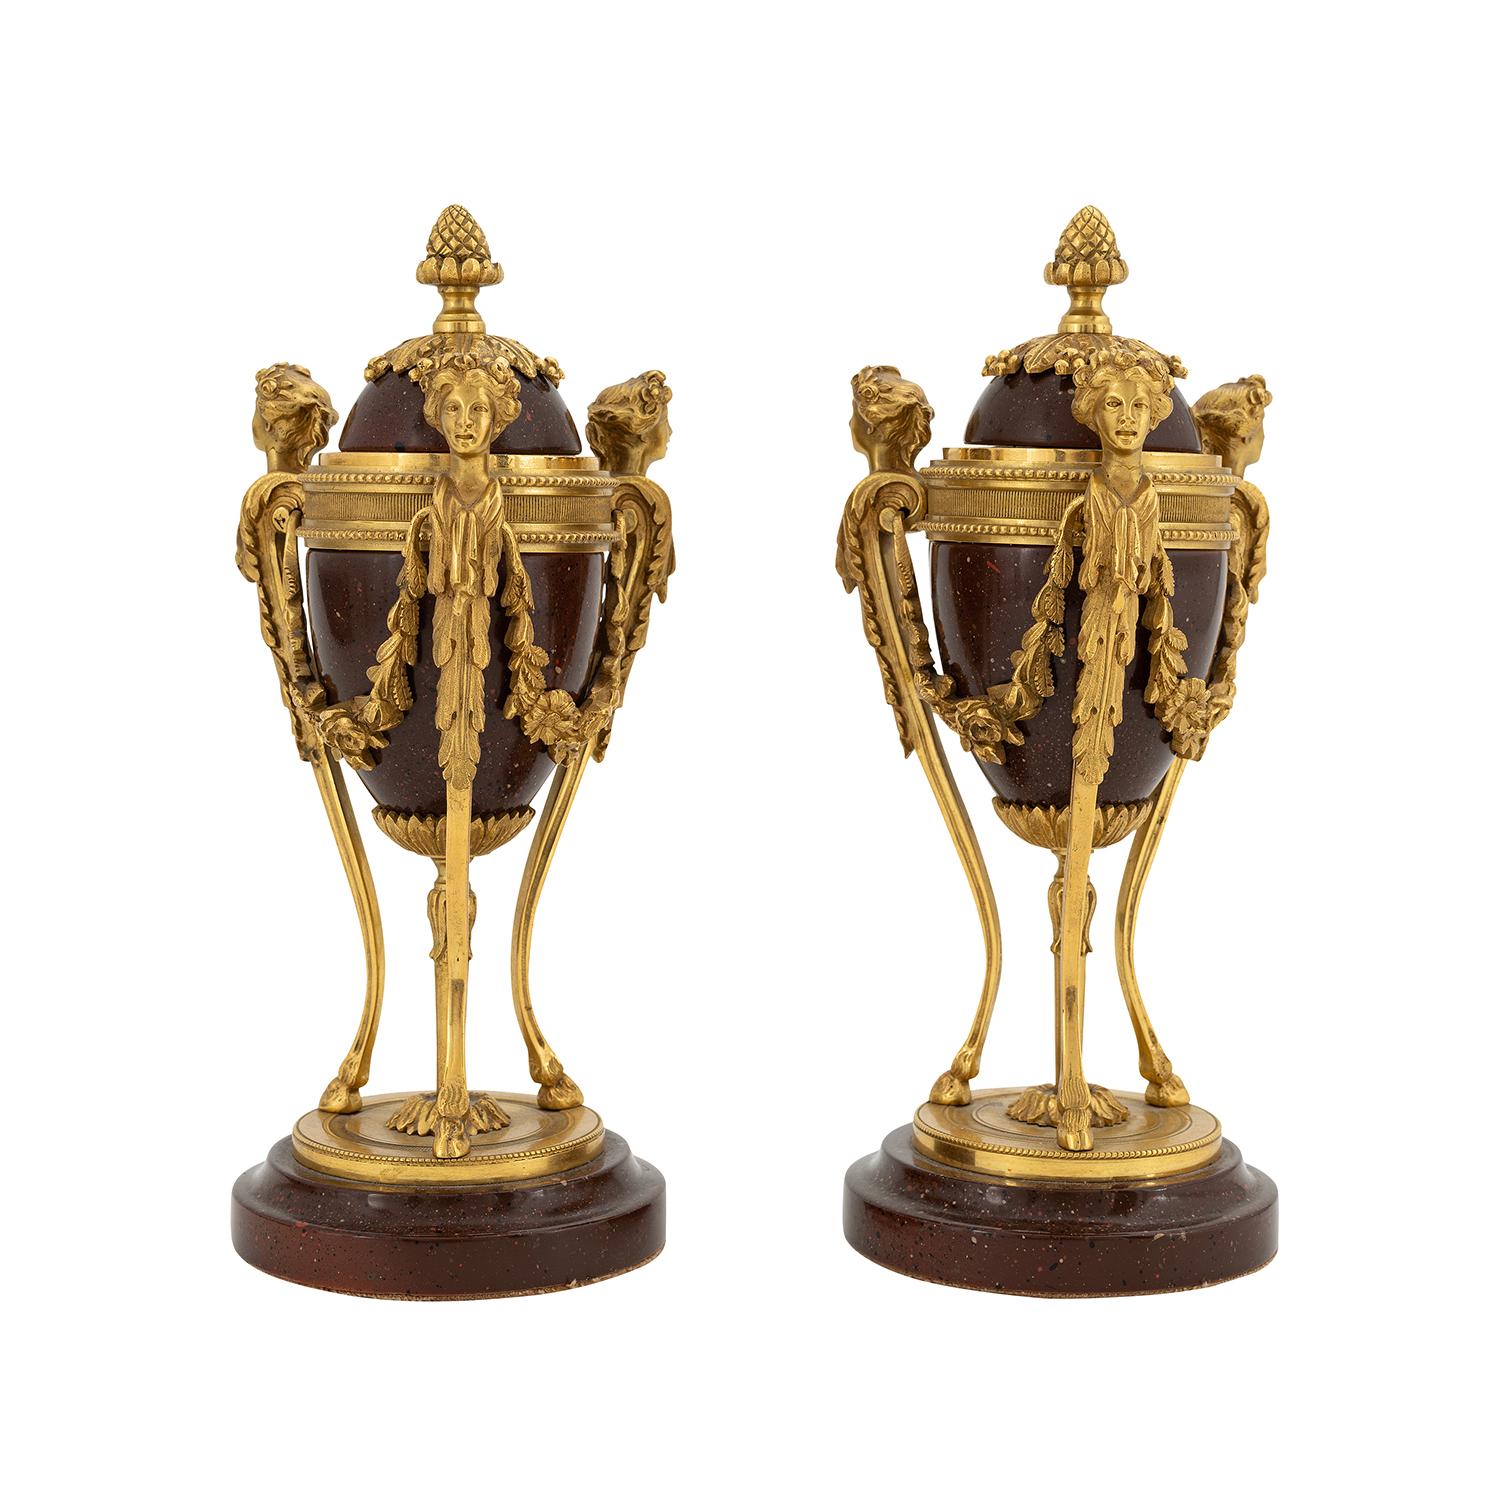 Ein gold-rotes, antikes französisches Paar kleiner Cassoulettes aus handgefertigtem Porzellan, in gutem Zustand. Jede der Pariser Athenerinnen besteht aus vier vergoldeten Bronzemädchen, die durch Blumengirlanden hervorgehoben werden und auf einem